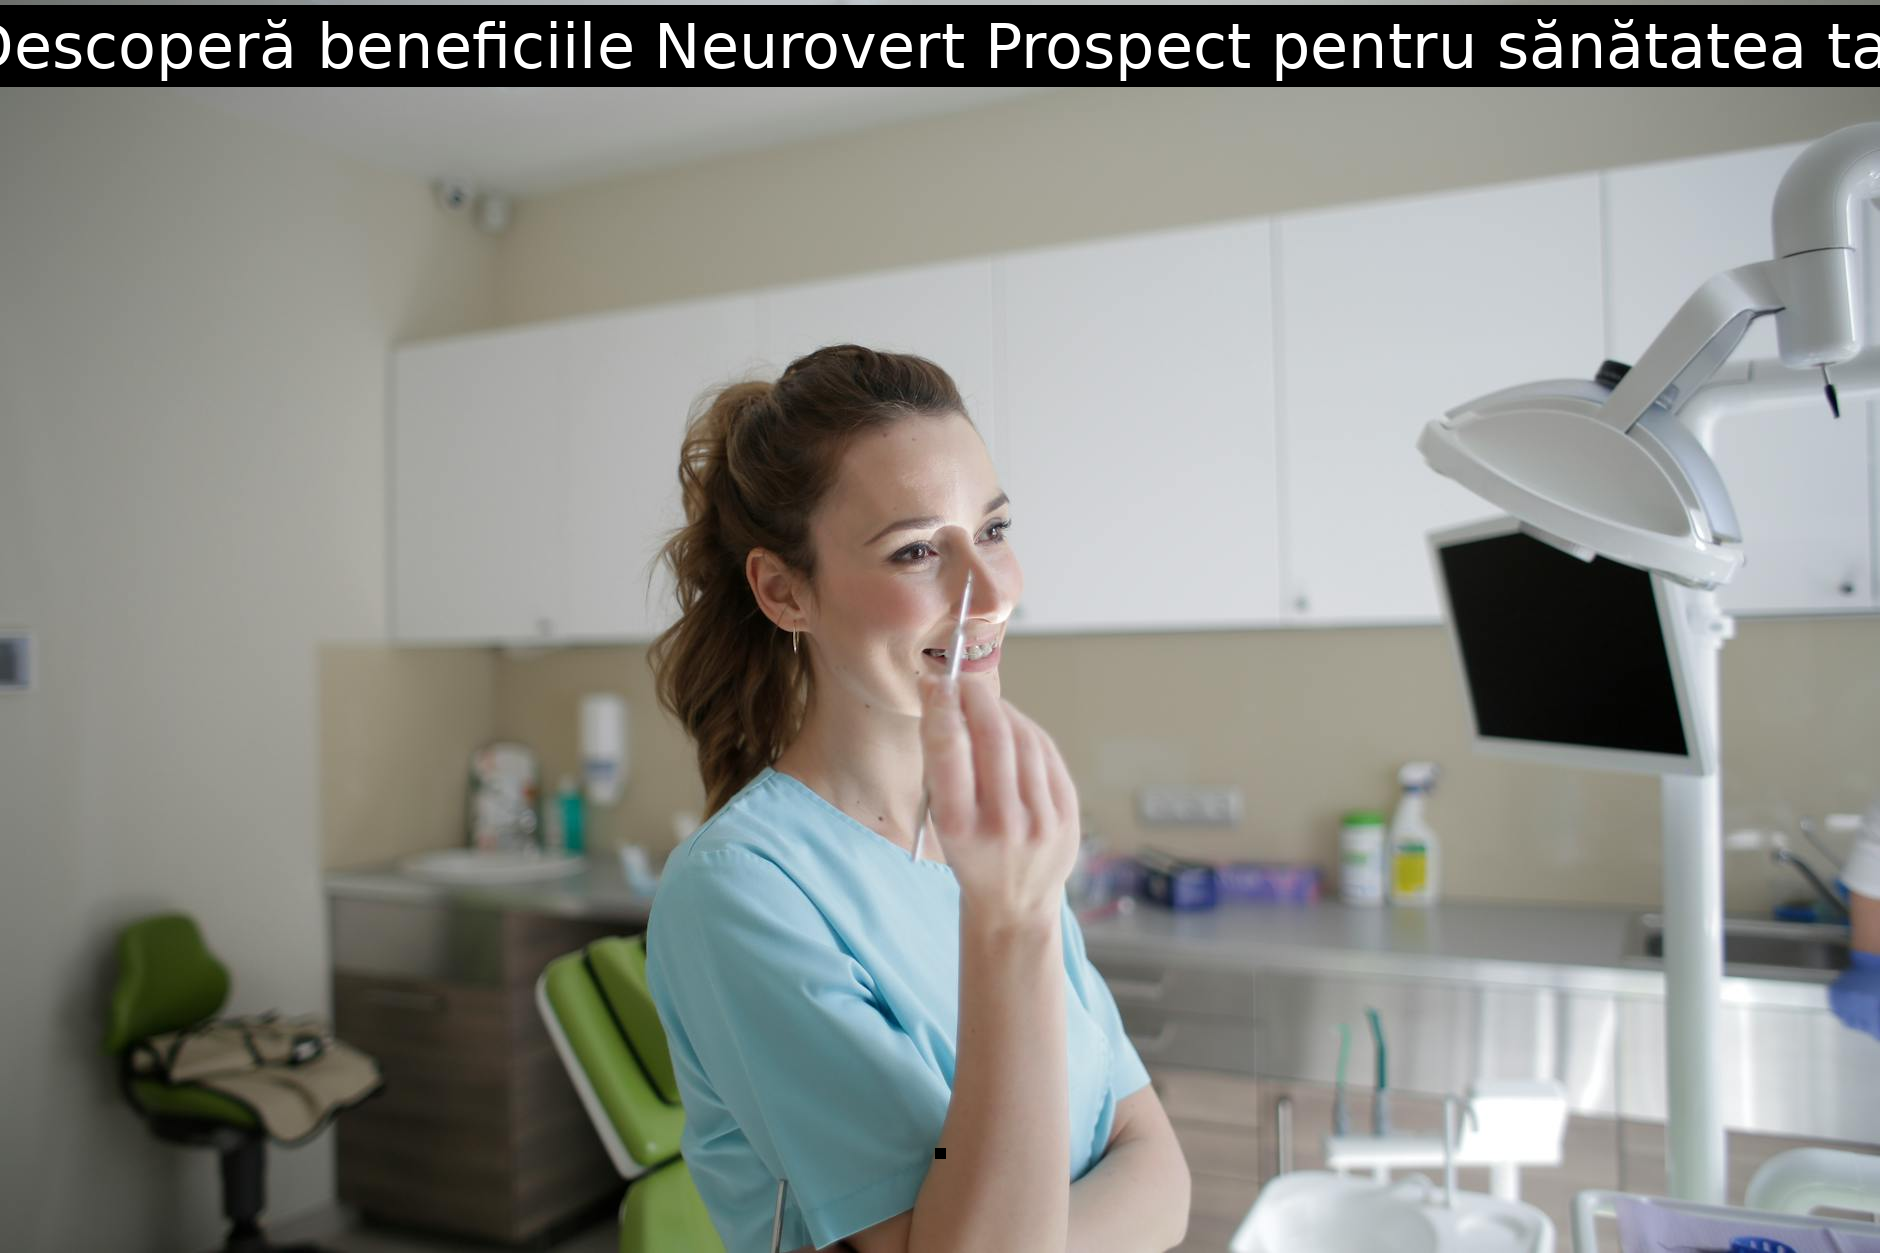 Descoperă beneficiile Neurovert Prospect pentru sănătatea ta!